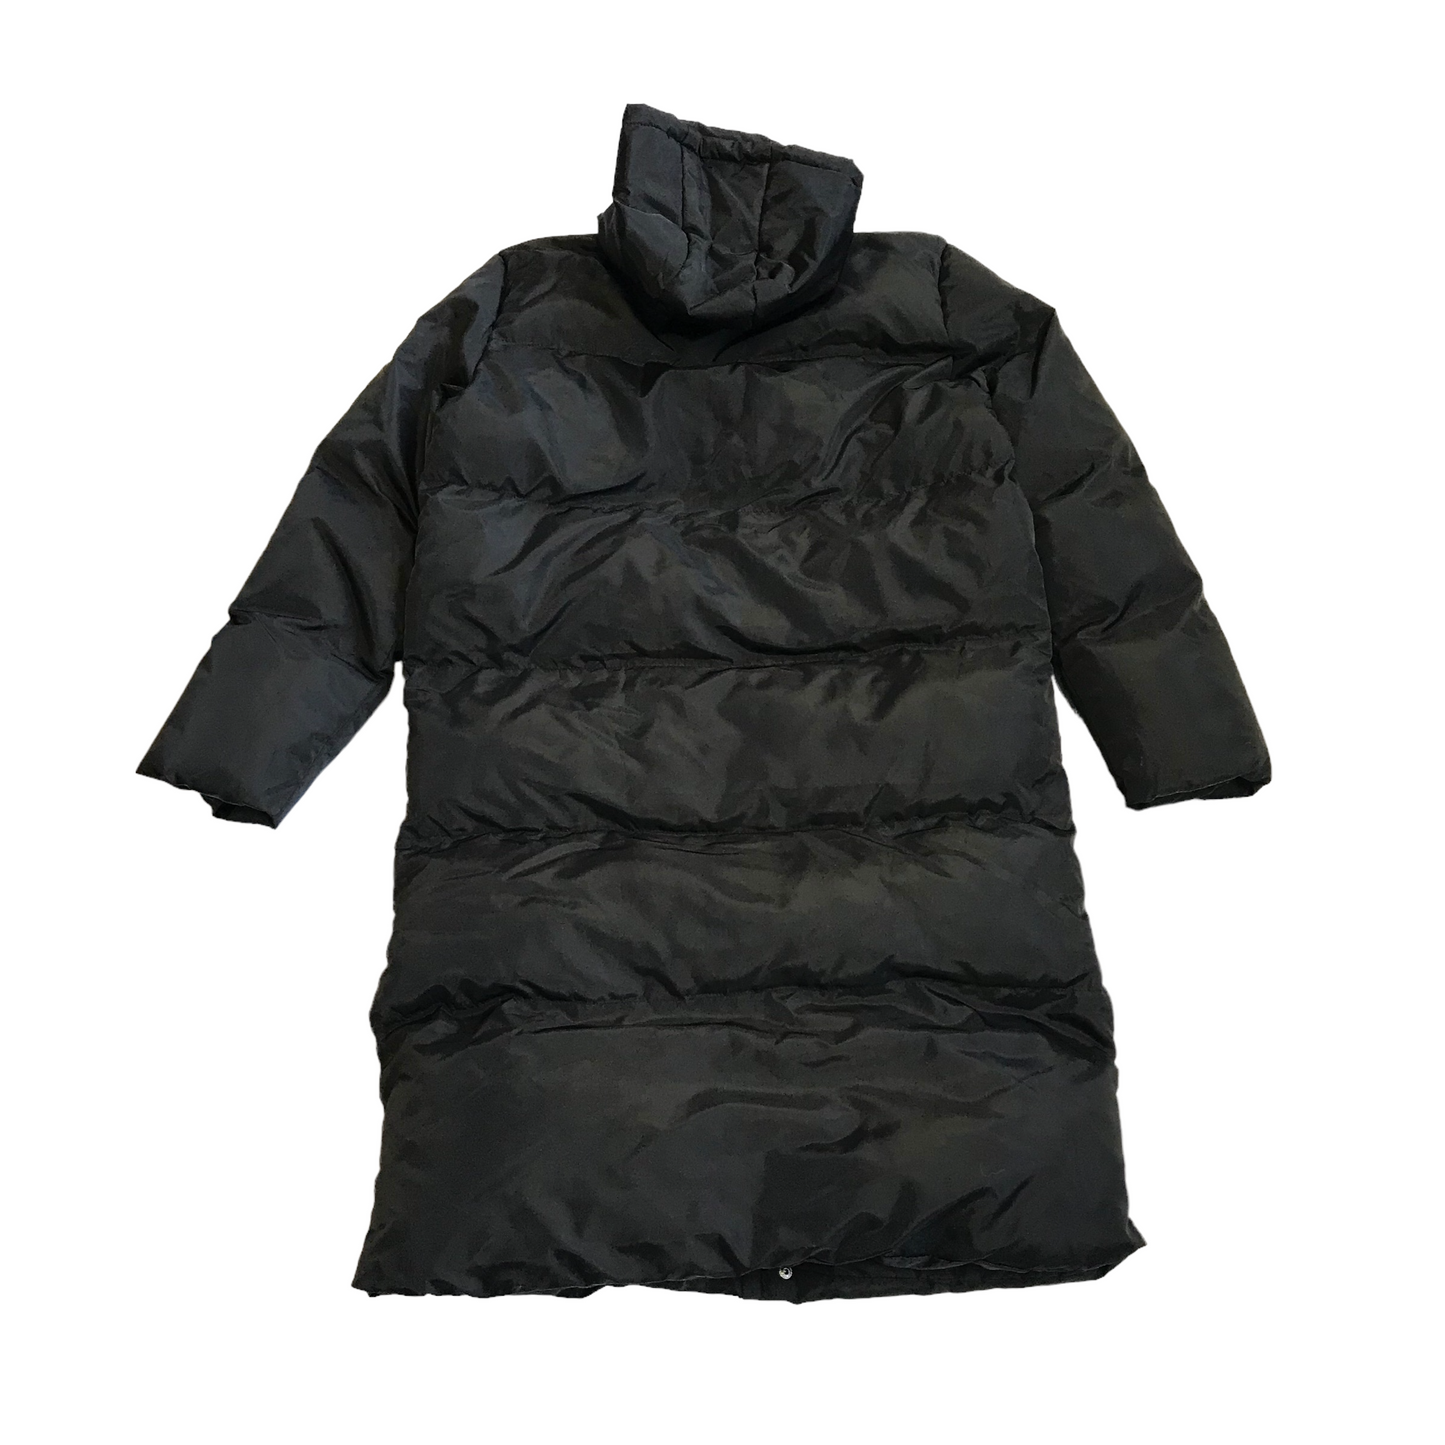 Pan Shuai Black Long Parka Puffer Jacket Women's Size 16